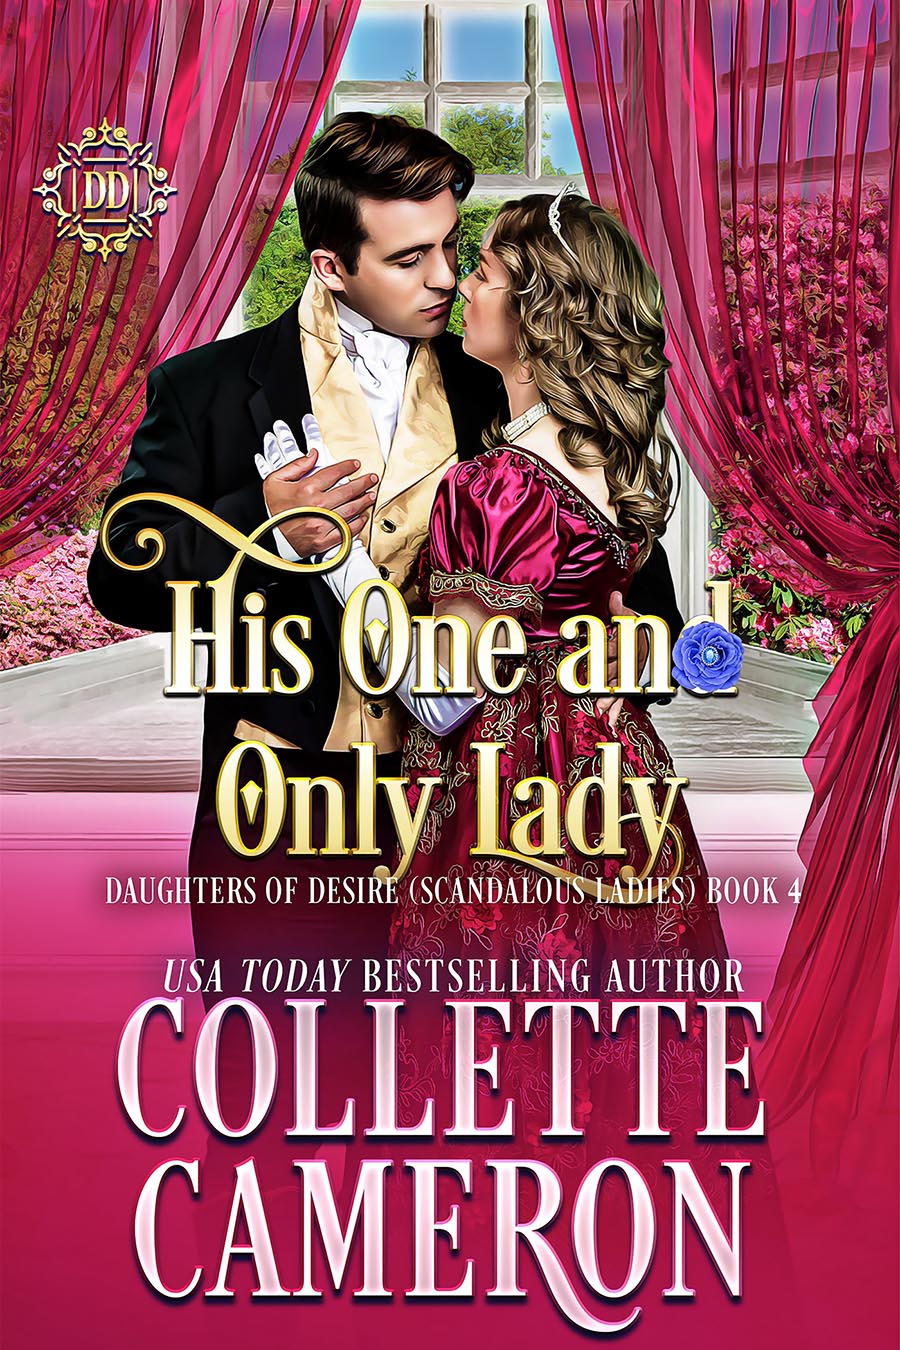 Collette's Historical Romances 21